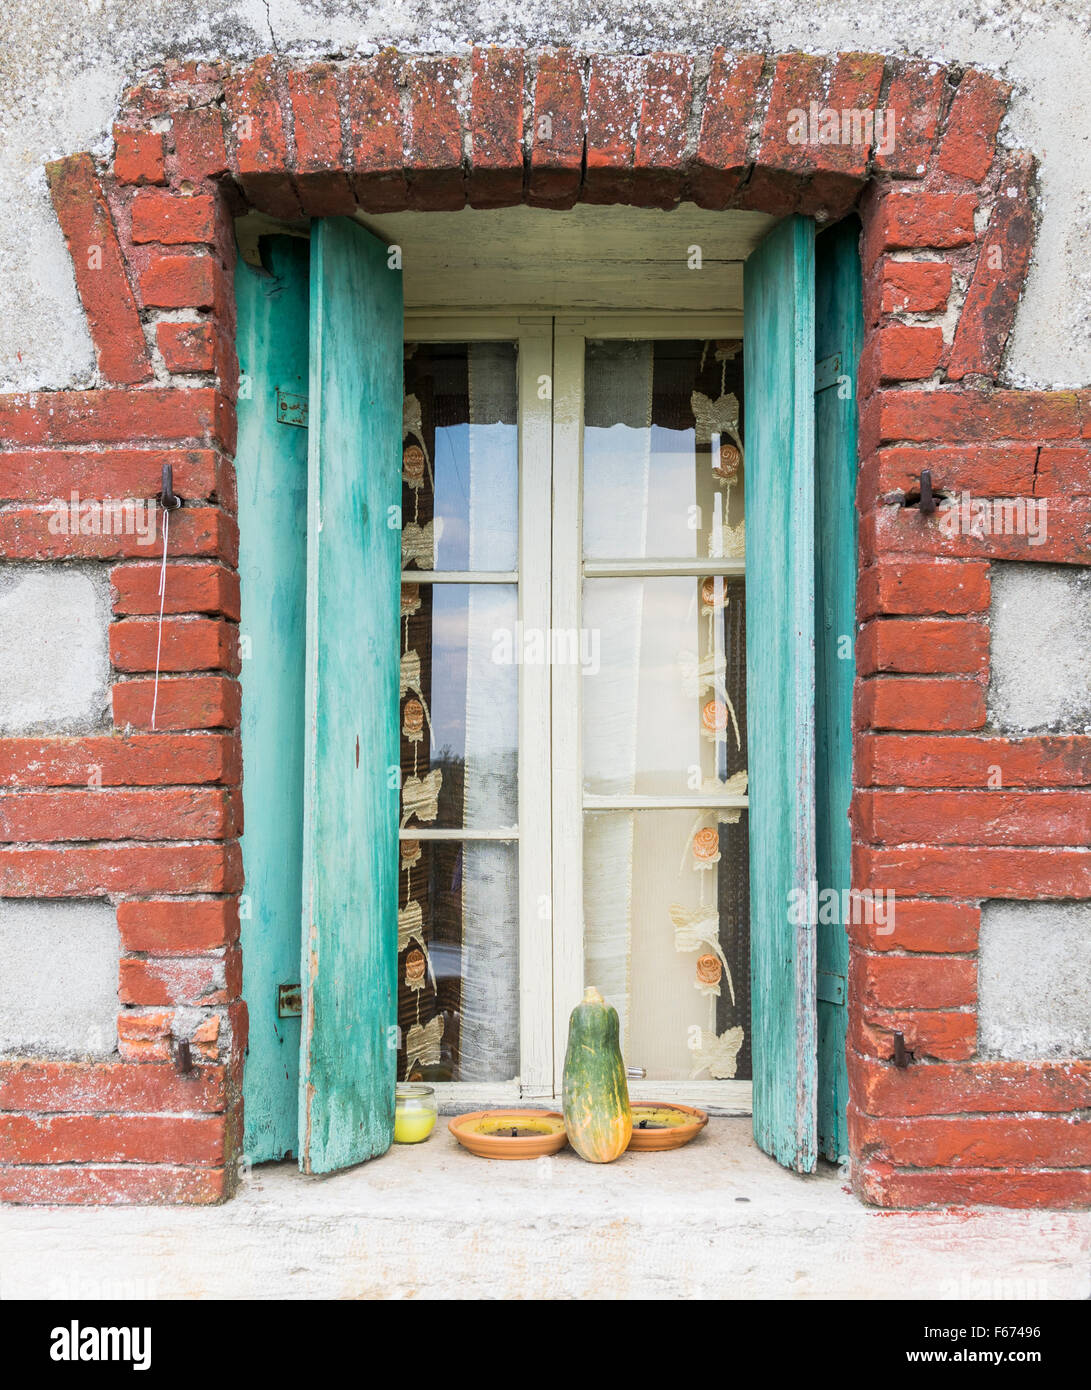 Fenster eines Bauernhauses mit Holzbalkonen und rotem Backstein Rahmen. Stockfoto